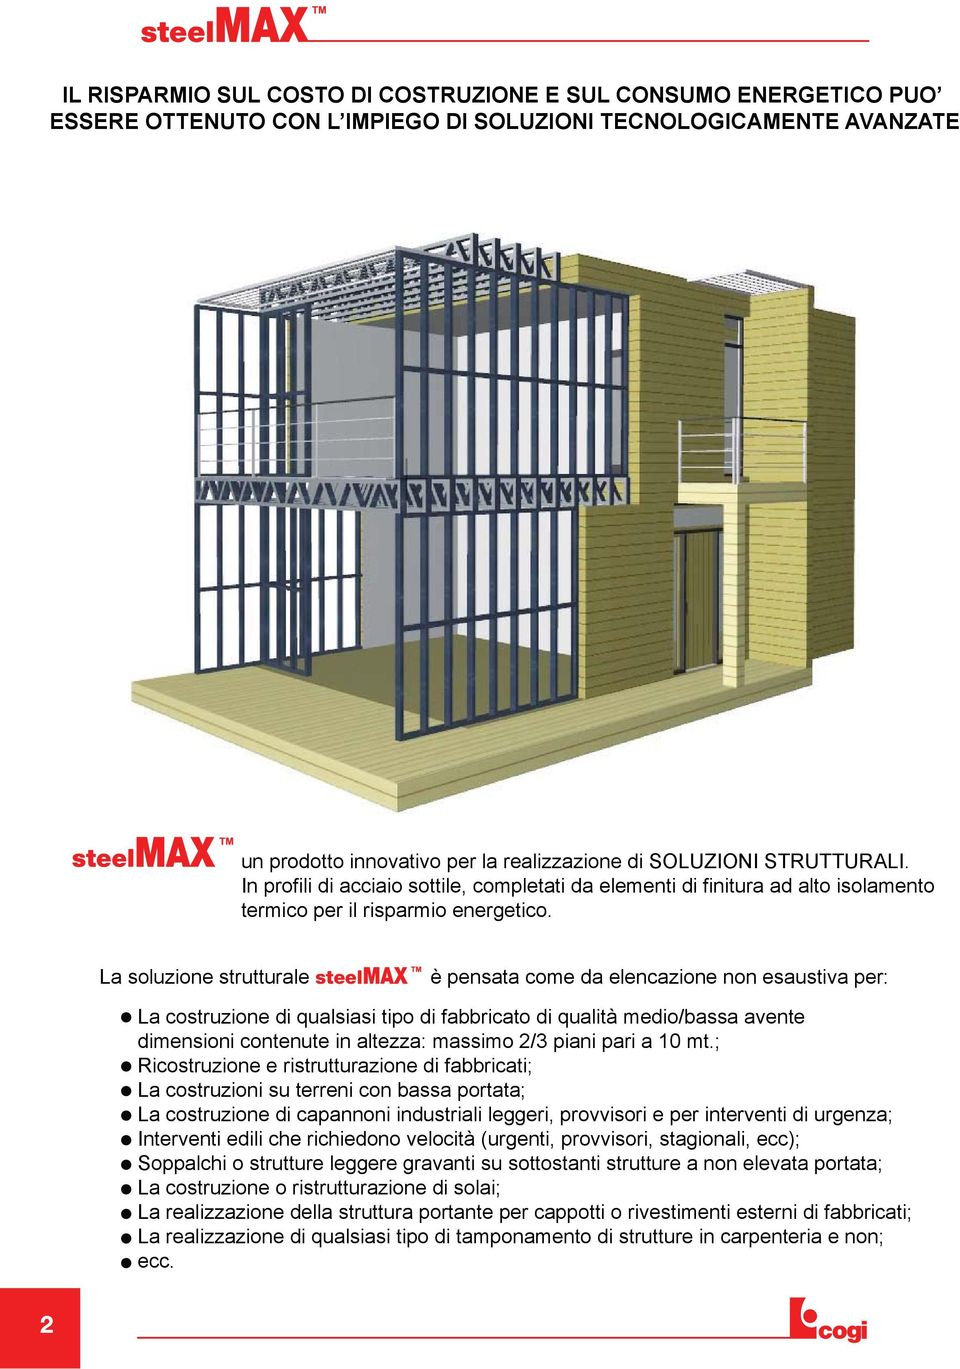 La soluzione strutturale steelmax è pensata come da elencazione non esaustiva per: La costruzione di qualsiasi tipo di fabbricato di qualità medio/bassa avente dimensioni contenute in altezza: